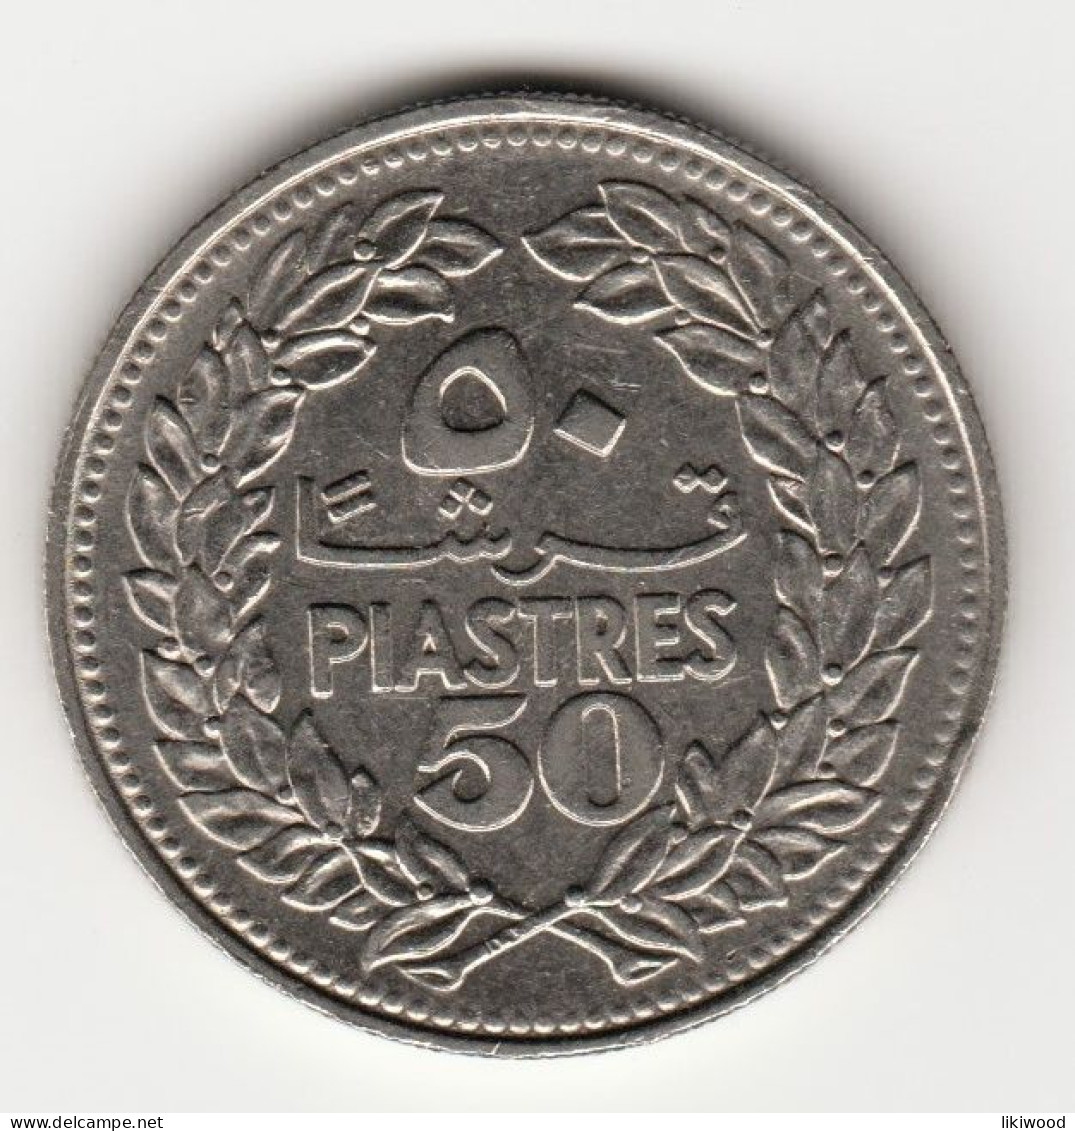 50 Piastres - 1970 - Lebanon - Lebanon